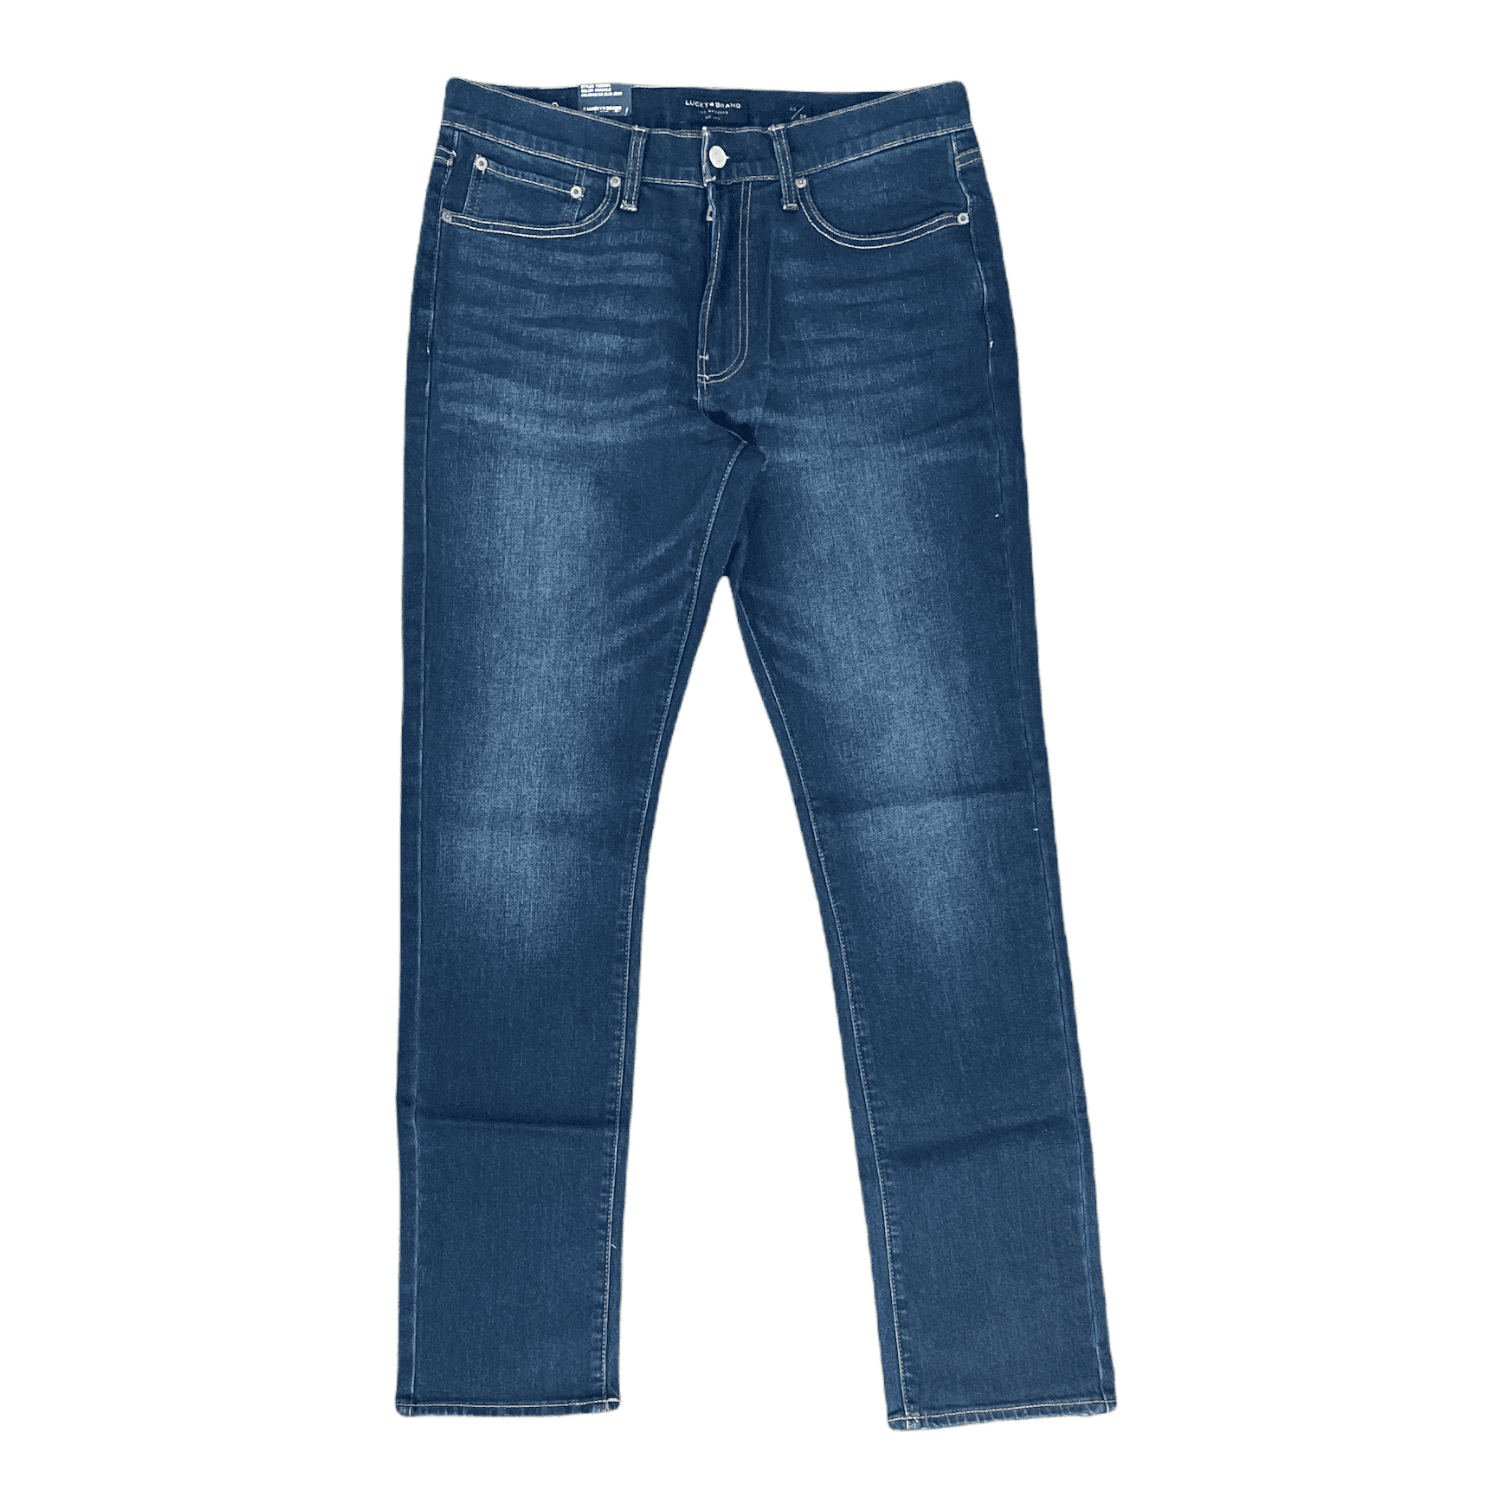 Lucky Men's Jeans "America's Favorite Workwear" Paint Spots Studio Denim 32/32 